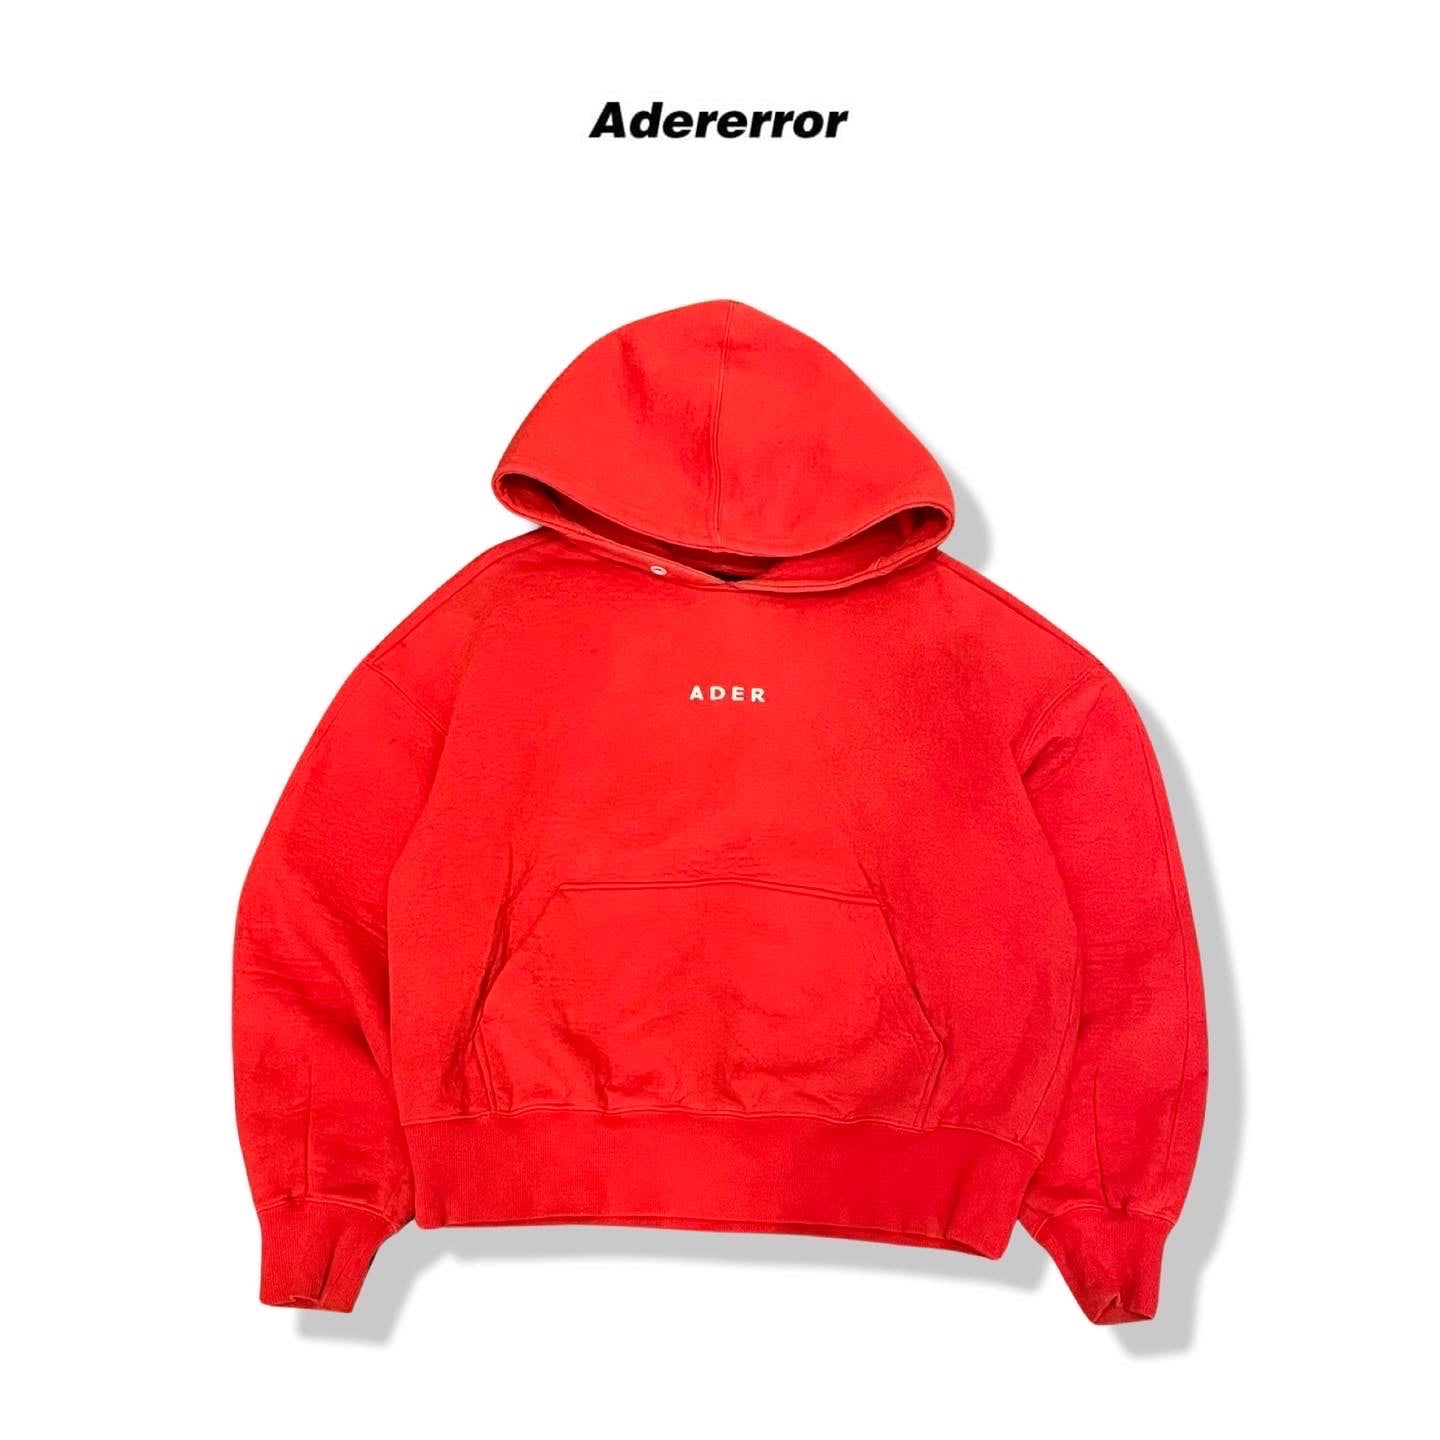 Adererror crop hoodie